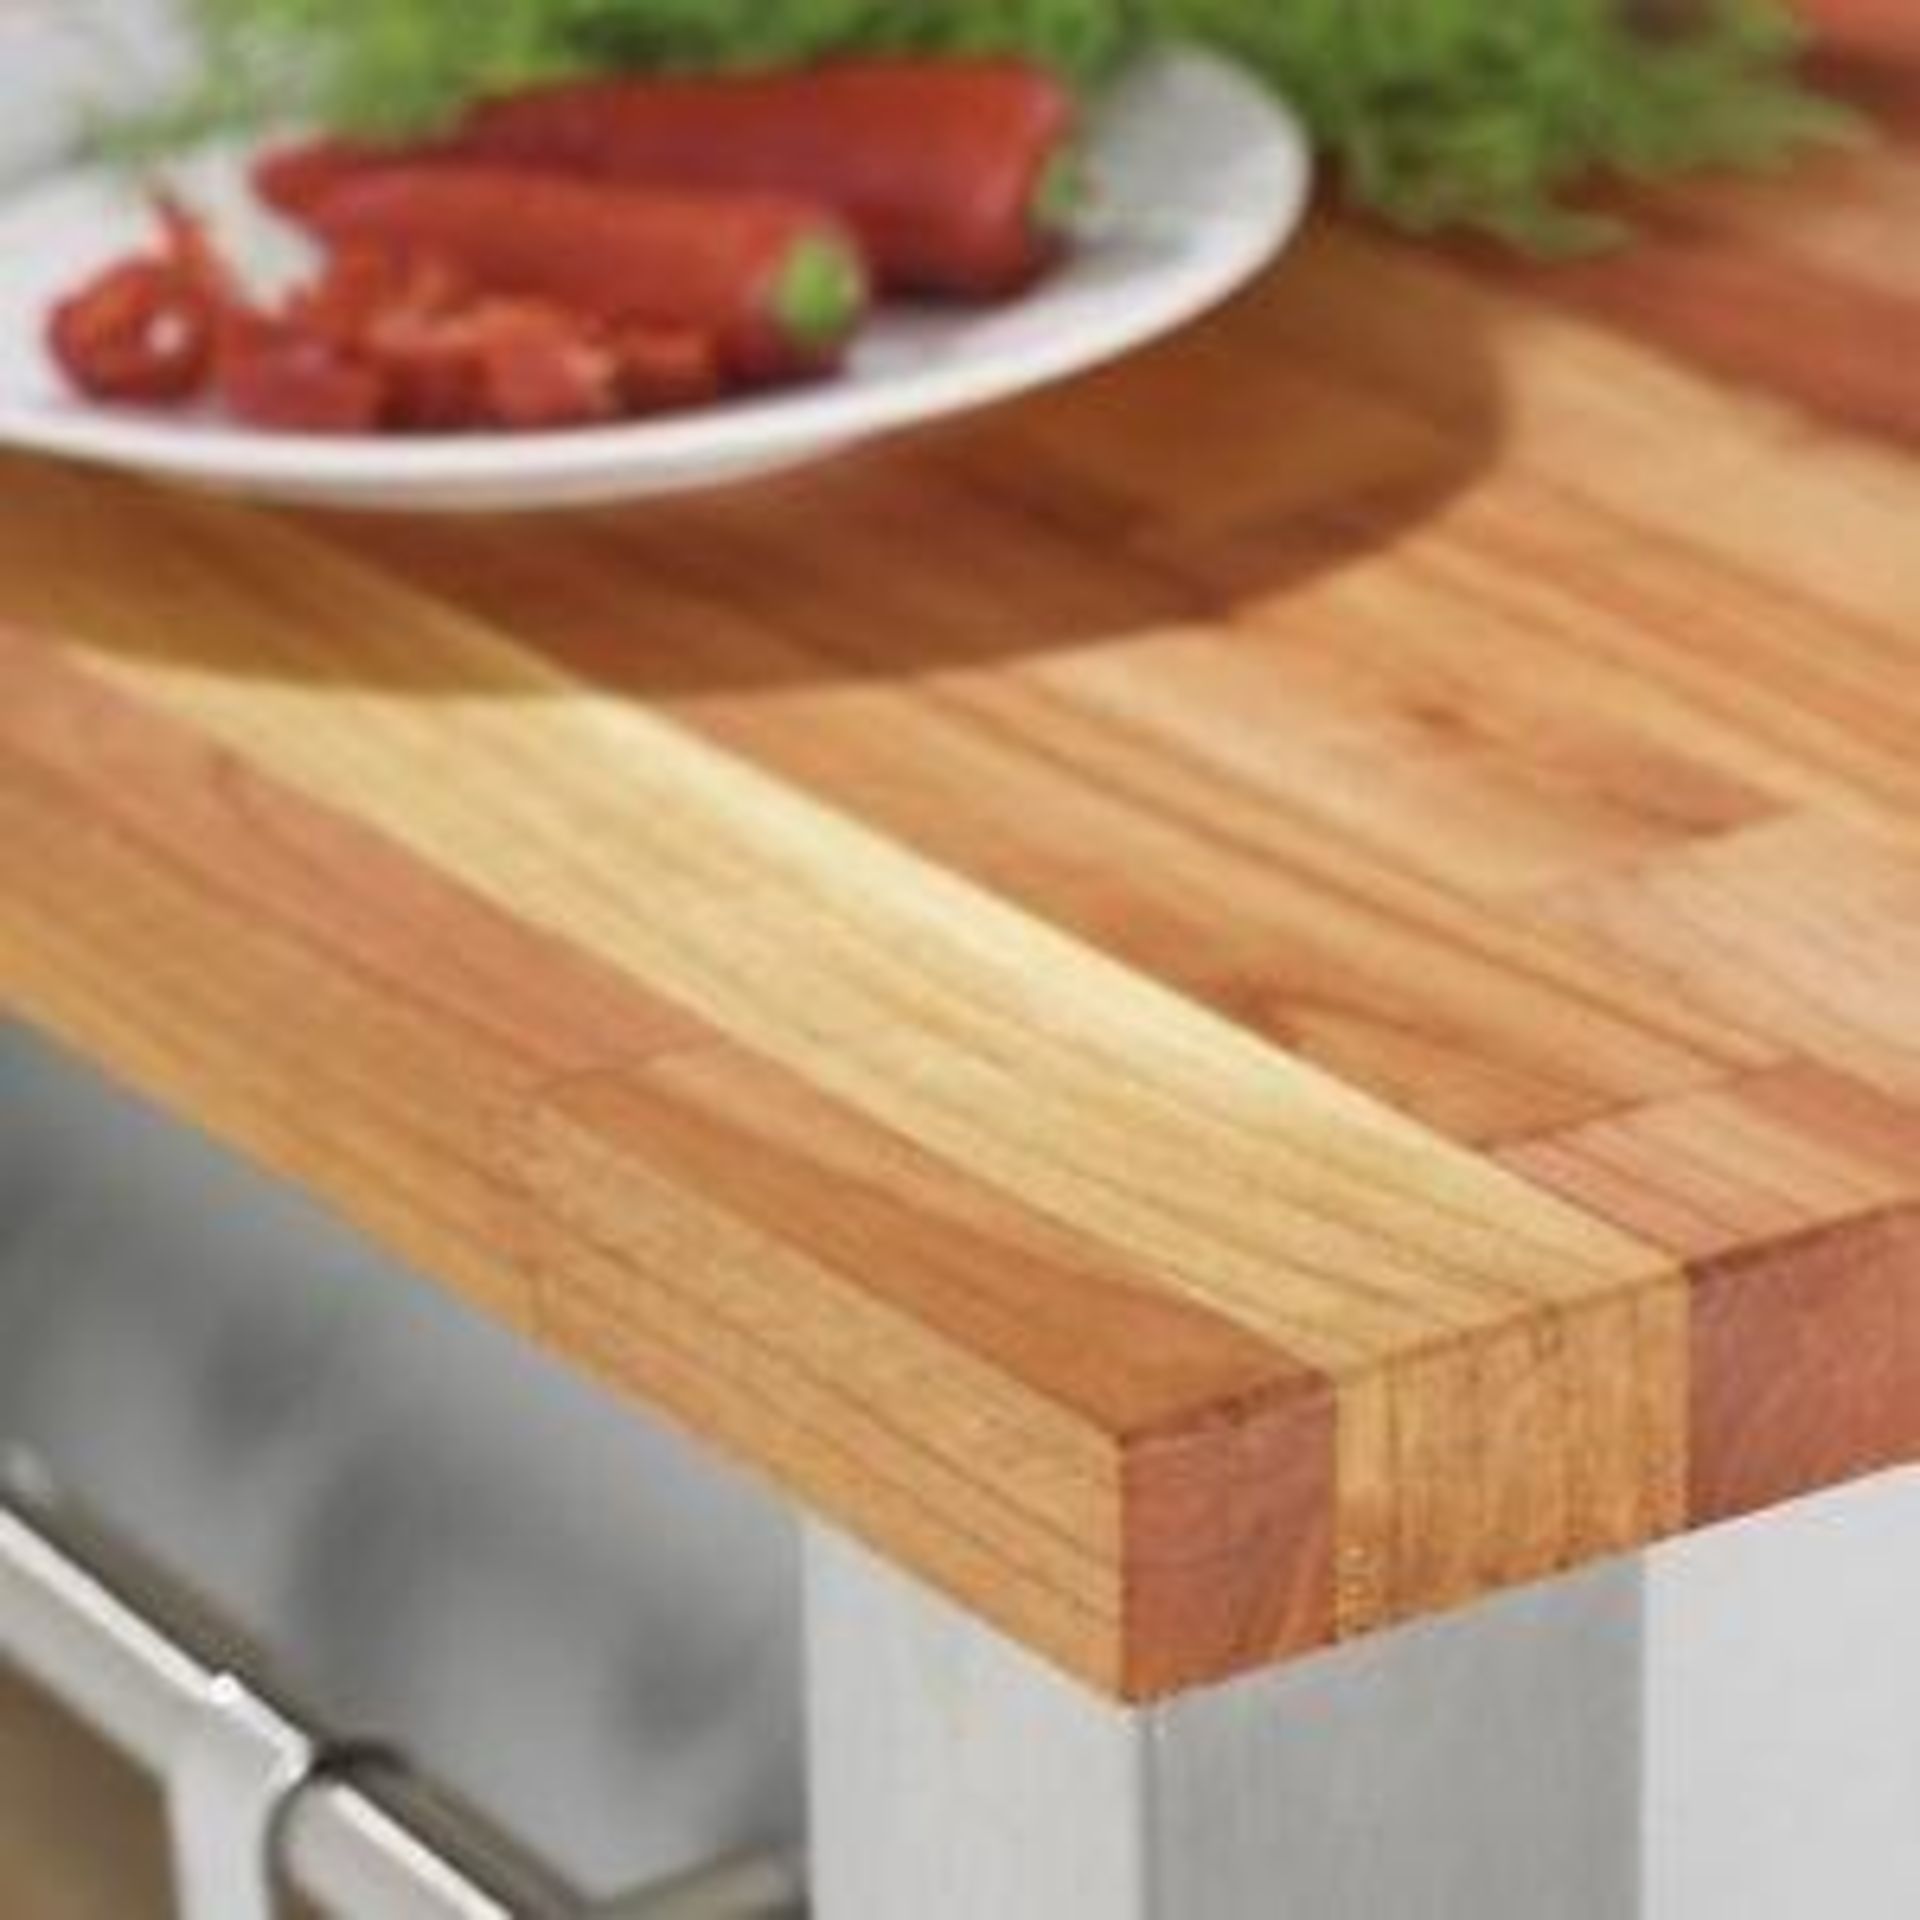 1 x Solid Wood Kitchen Worktop - CHERRY - Cherry Blockwood Kitchen Worktop - Size: 3000 x 900 x 32mm